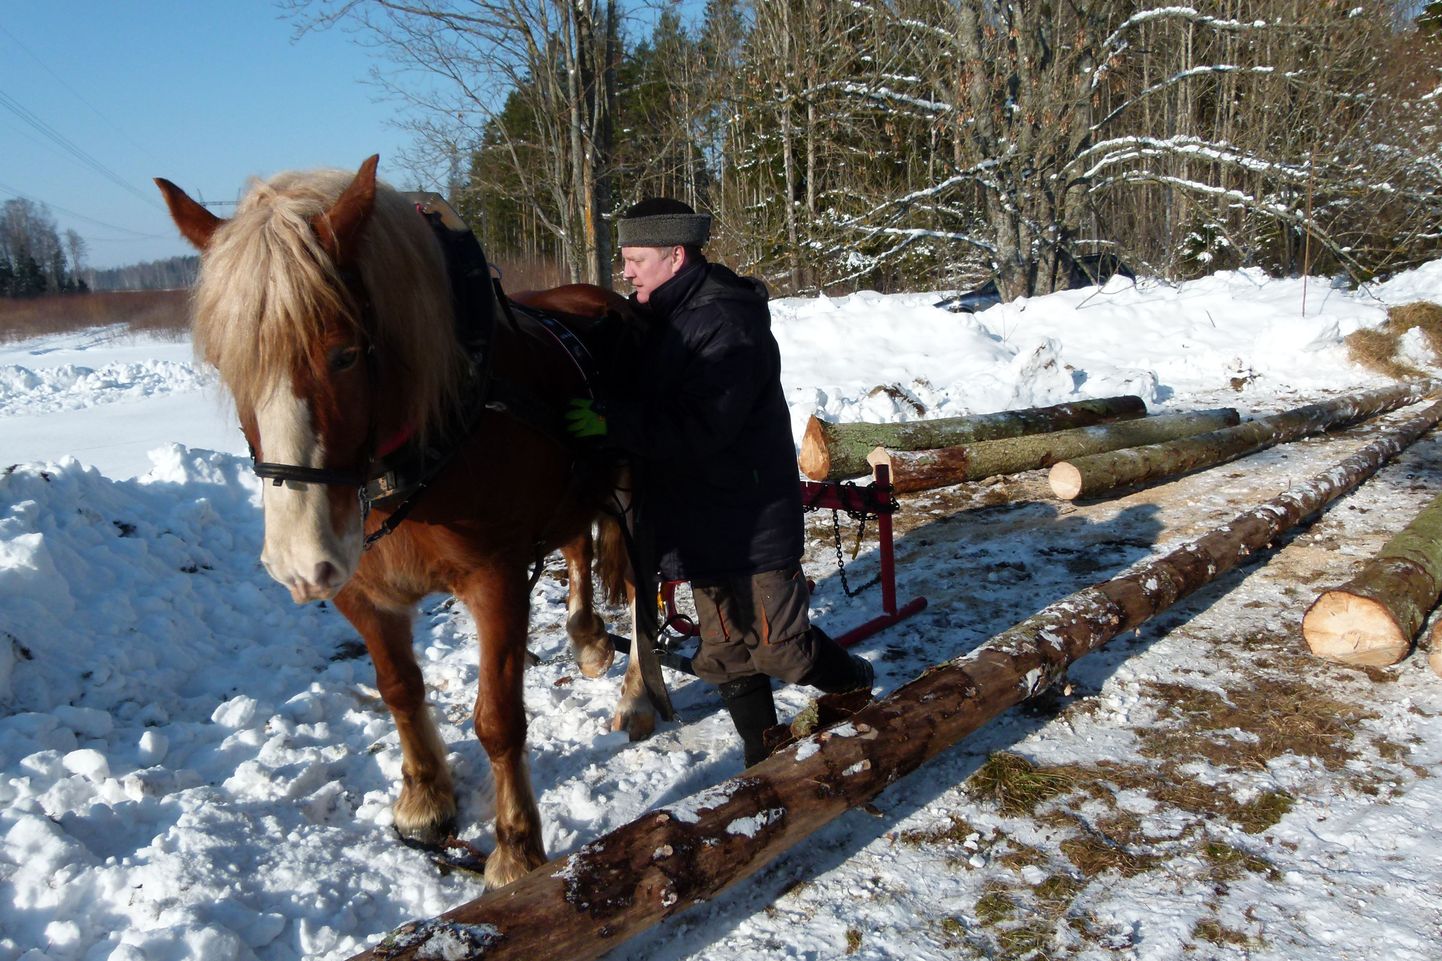 Paljud Eesti väikemetsaomanikud tegelevad oma metsaga hobi korras ja katsetavad seal asju, mida suuremad majandajad ei saa endale lubada. Näiteks puidu väljavedu hobusega, mida pildil näitab Vello Tamm.